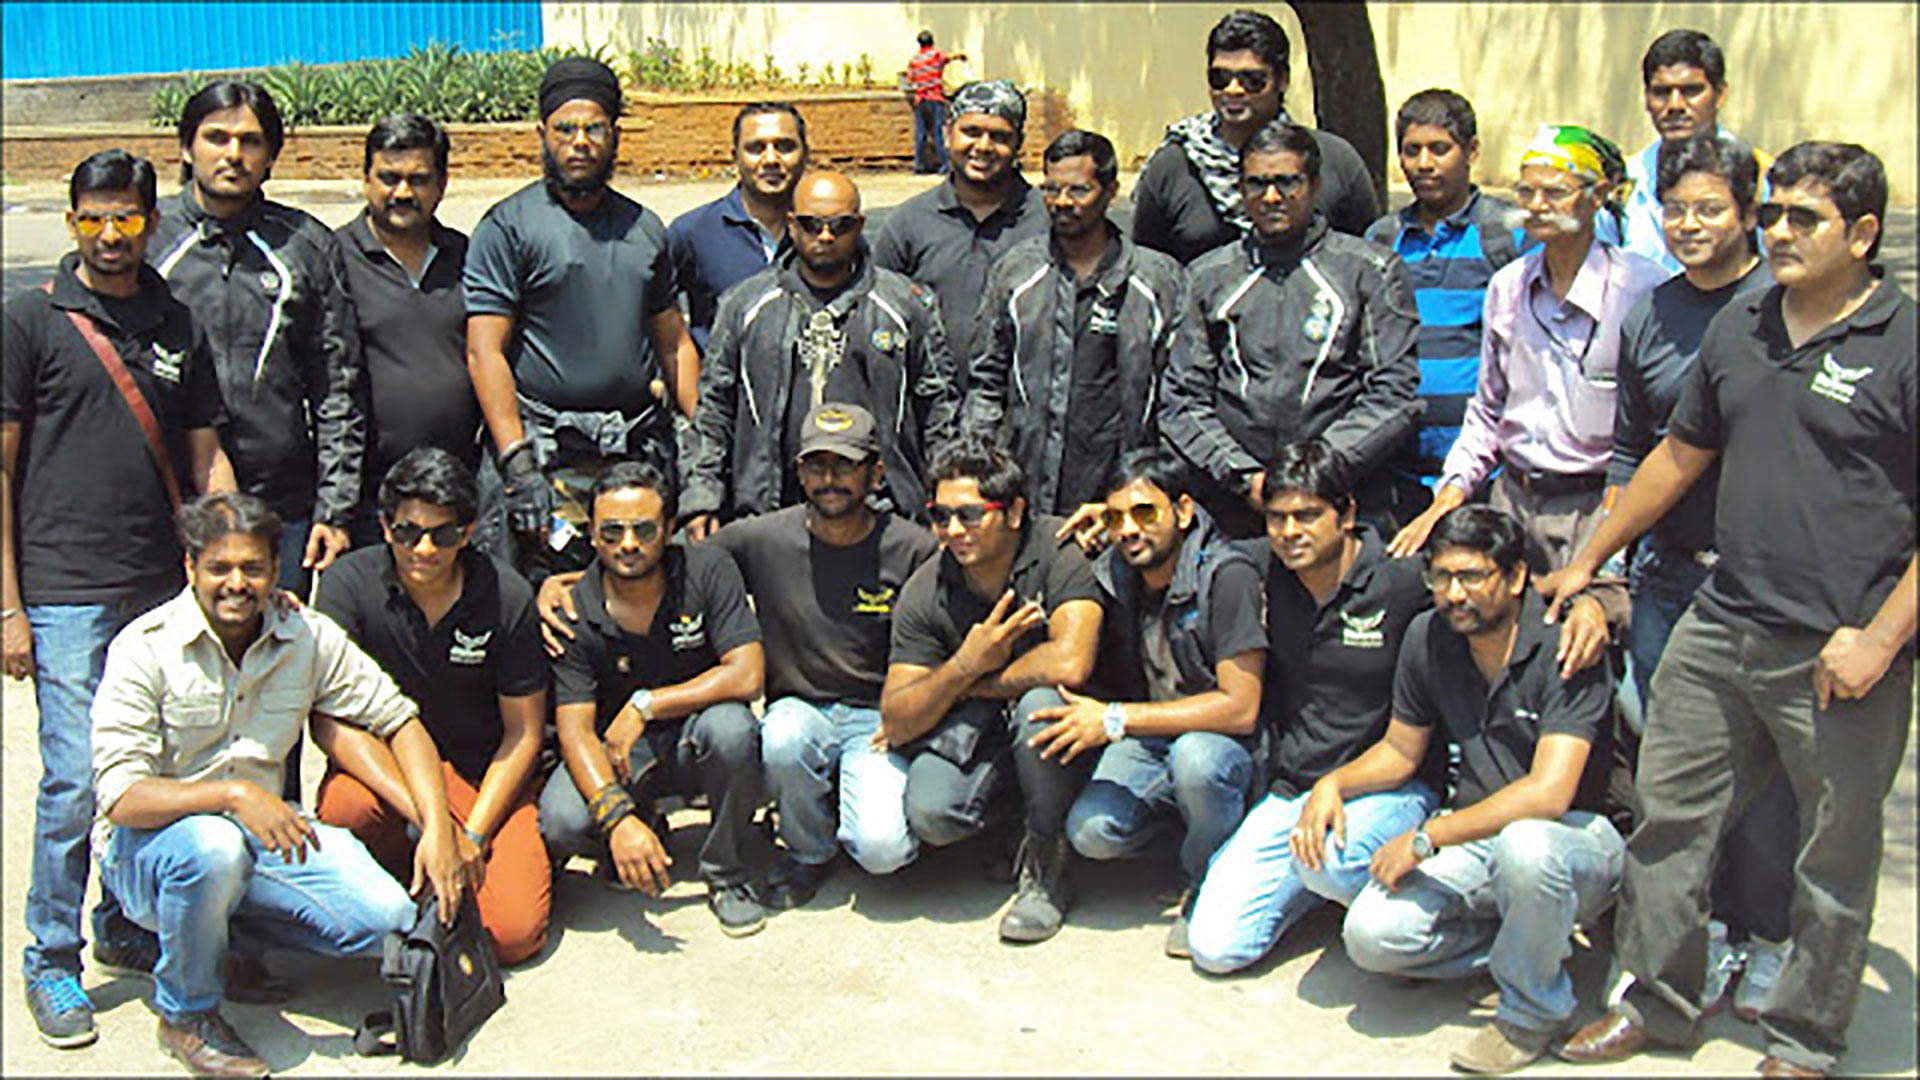 Wanderers of Hyderabad